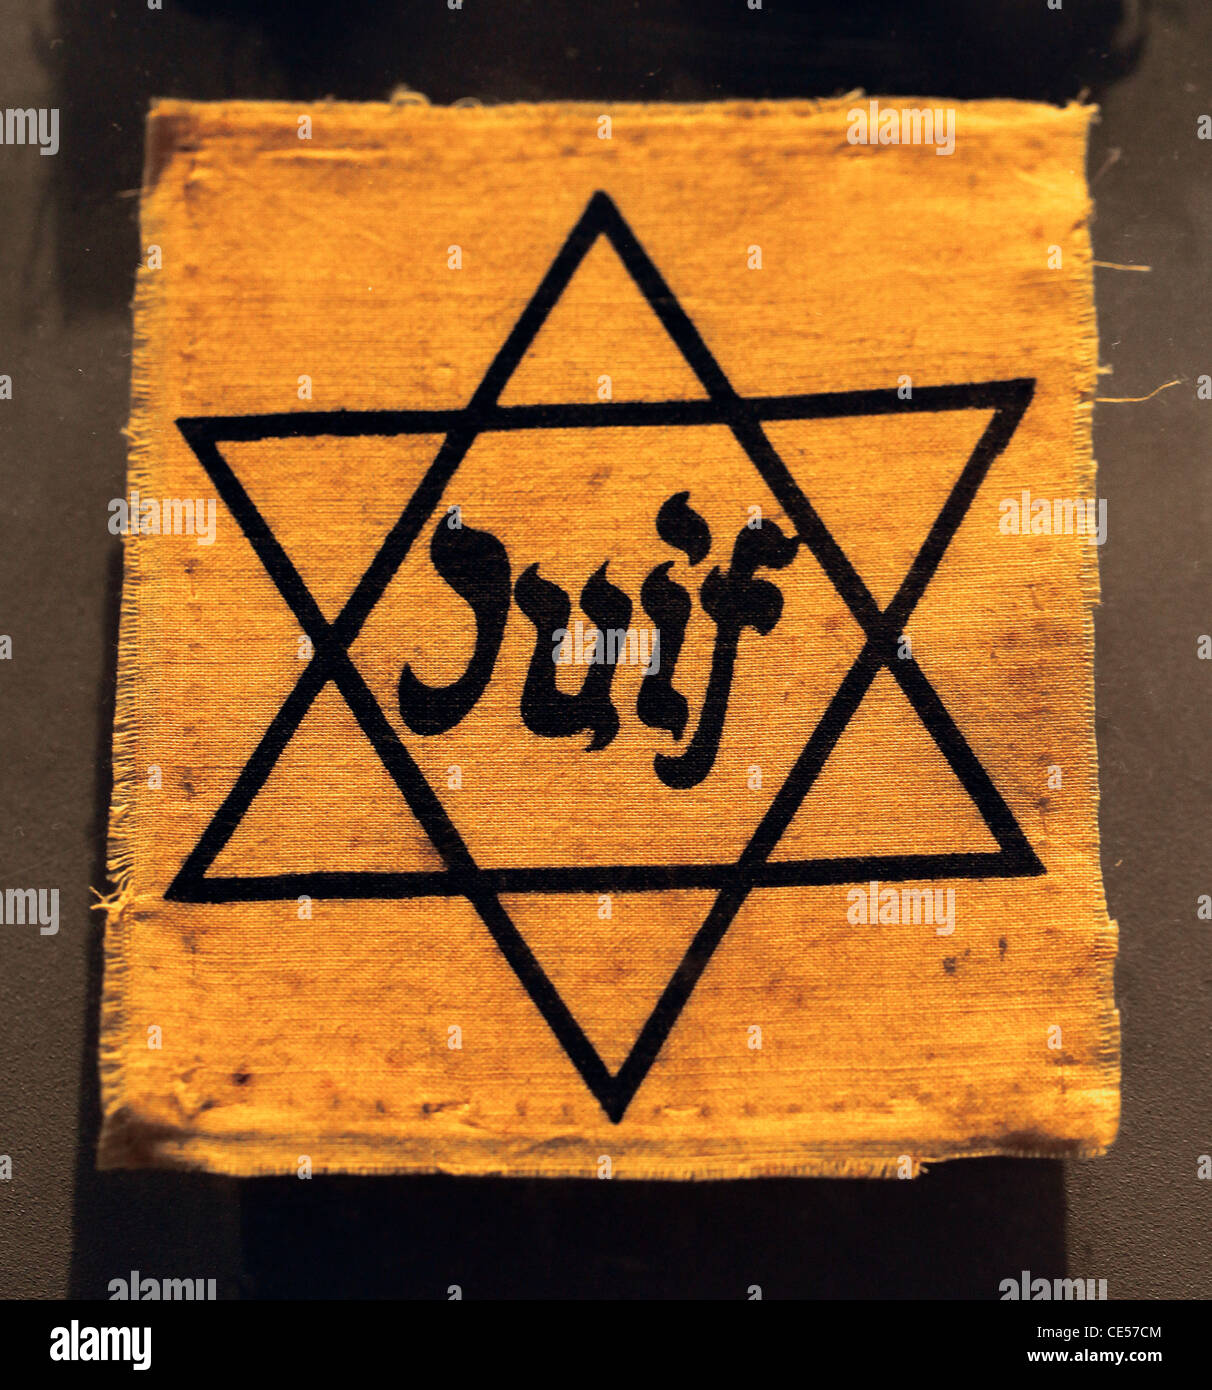 Le mot peuple juif en français au badge jaune ou tache jaune portant l'étoile de David rendu obligatoire pour les juifs par les nazis en france Banque D'Images